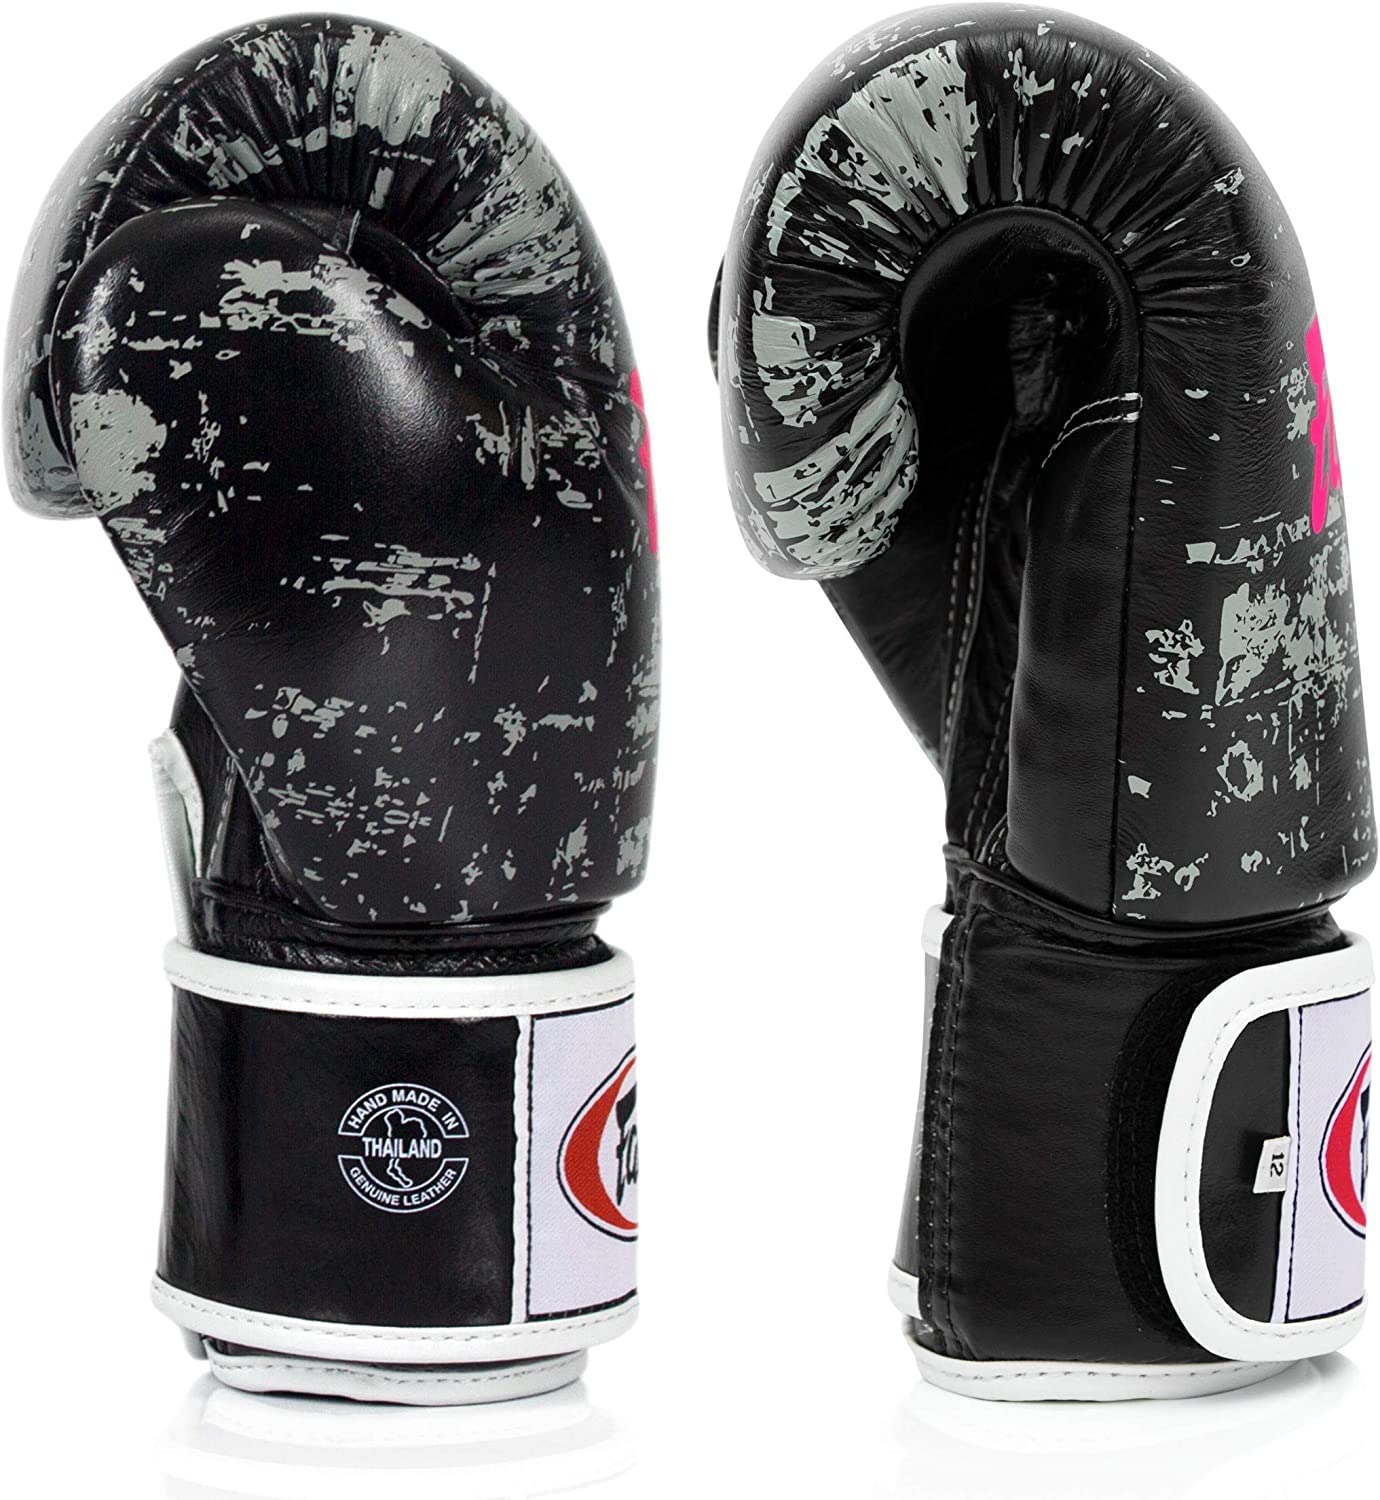 Fairtex - Dark Cloud Muay Thai Boxing Gloves - BGV1 Sides